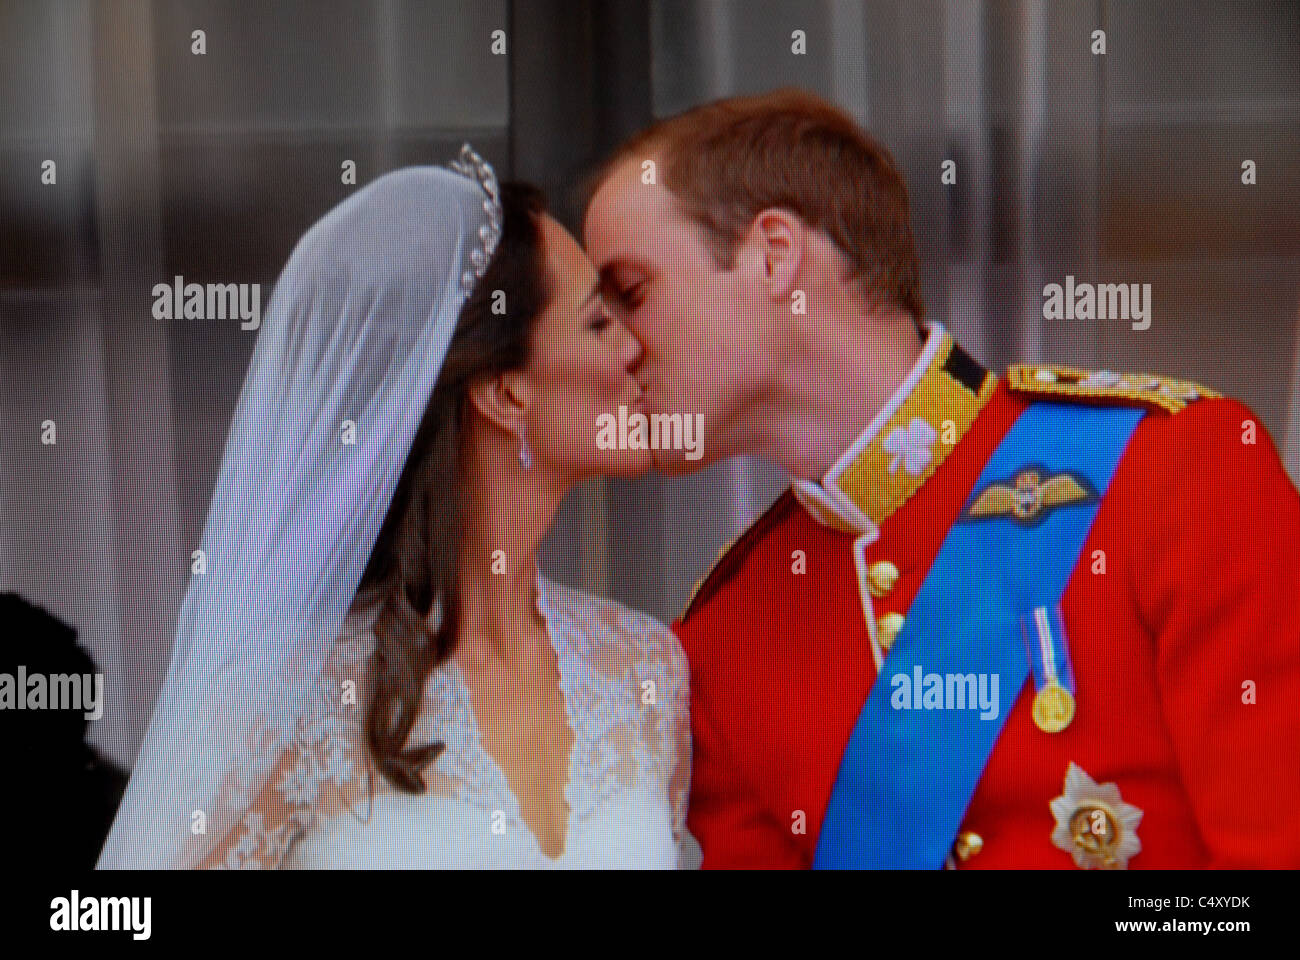 Die königliche Hochzeit von Prinz William und Catherine Middleton, Freitag, 29. April 2011 in der Westminster Abbey. Kreative Fokus auf Bildschirm Stockfoto